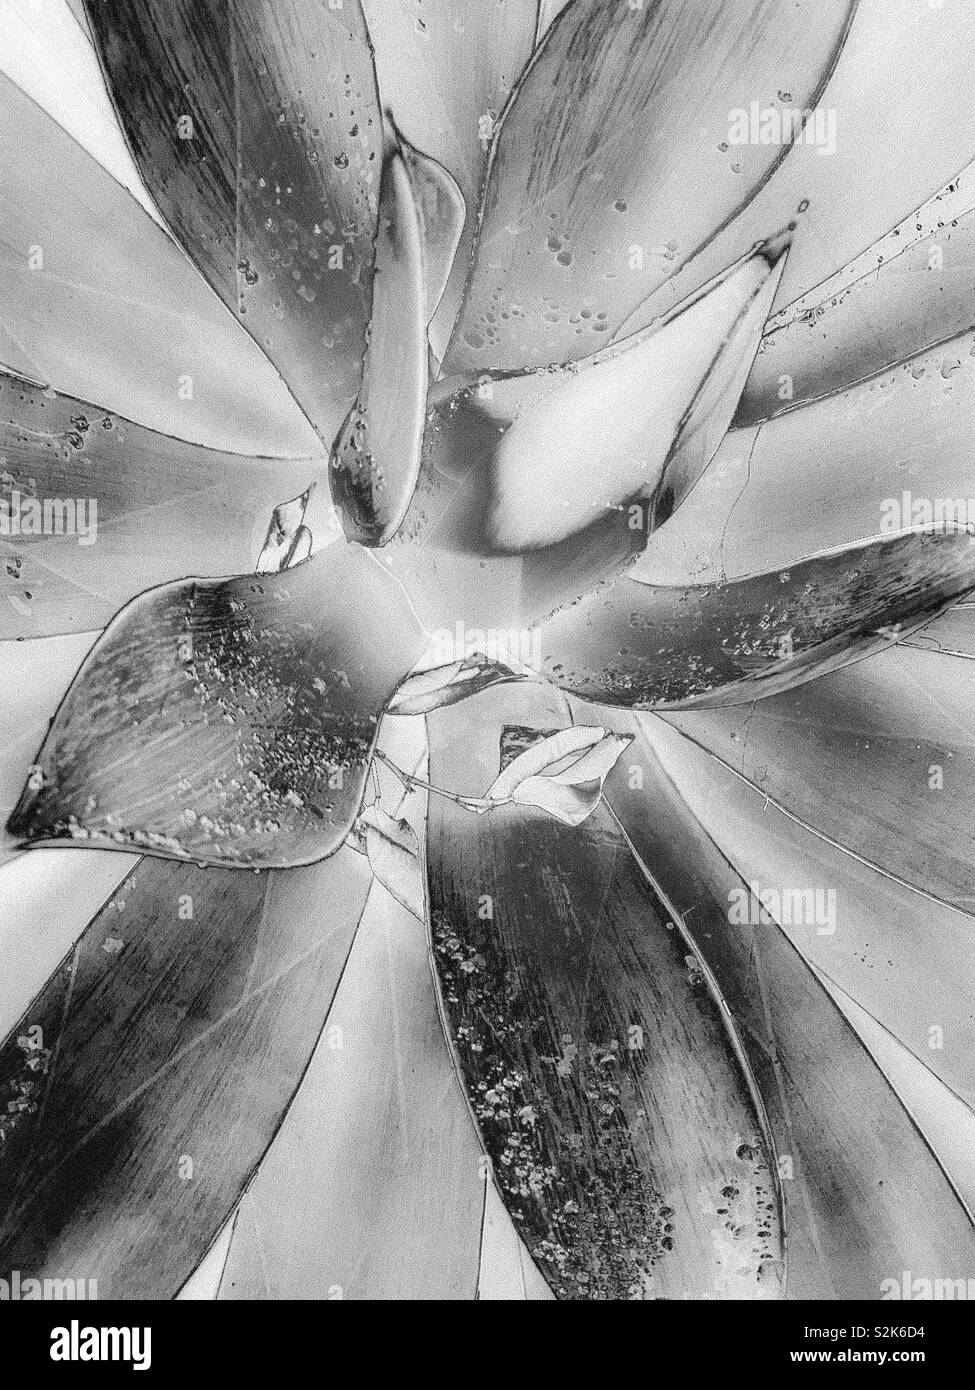 龍舌蘭科之翡翠盤 / Agave attenuata Salm-Dyck in Black and White Stock Photo